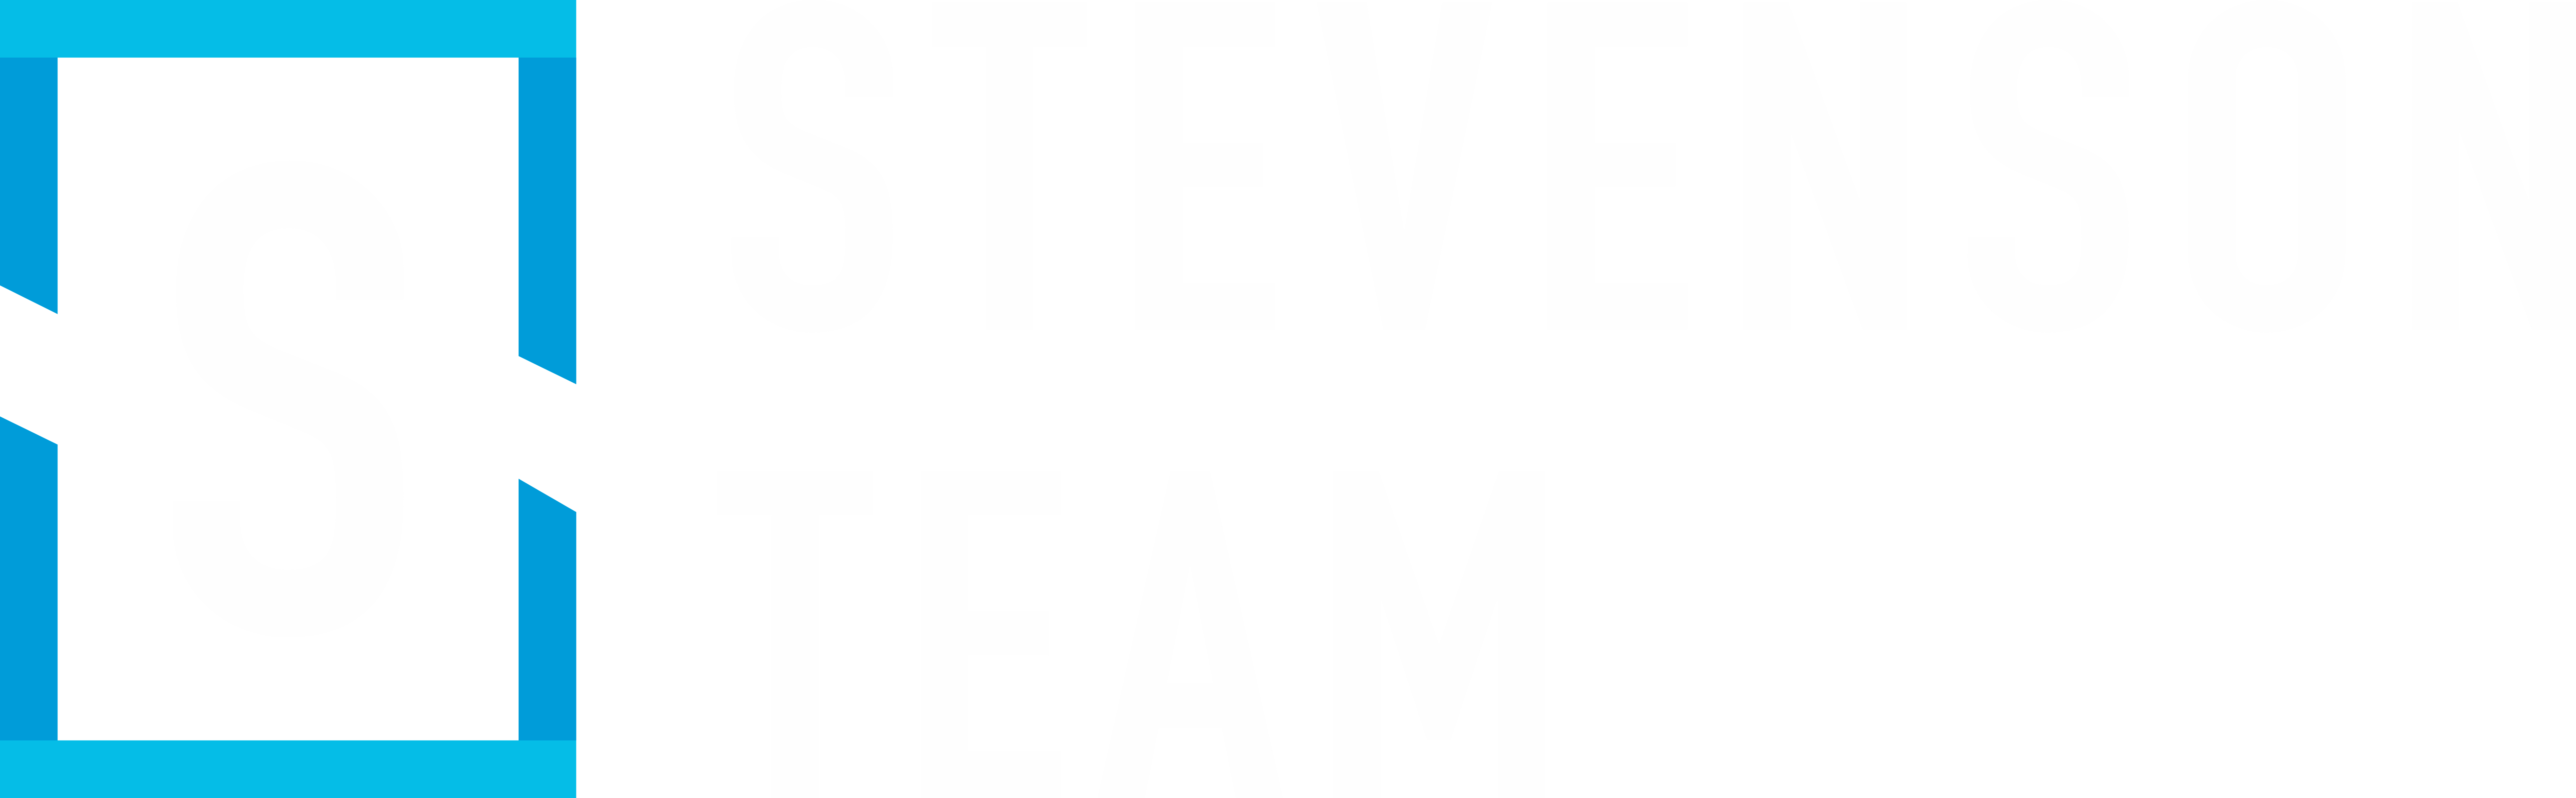 The Stevenson Team